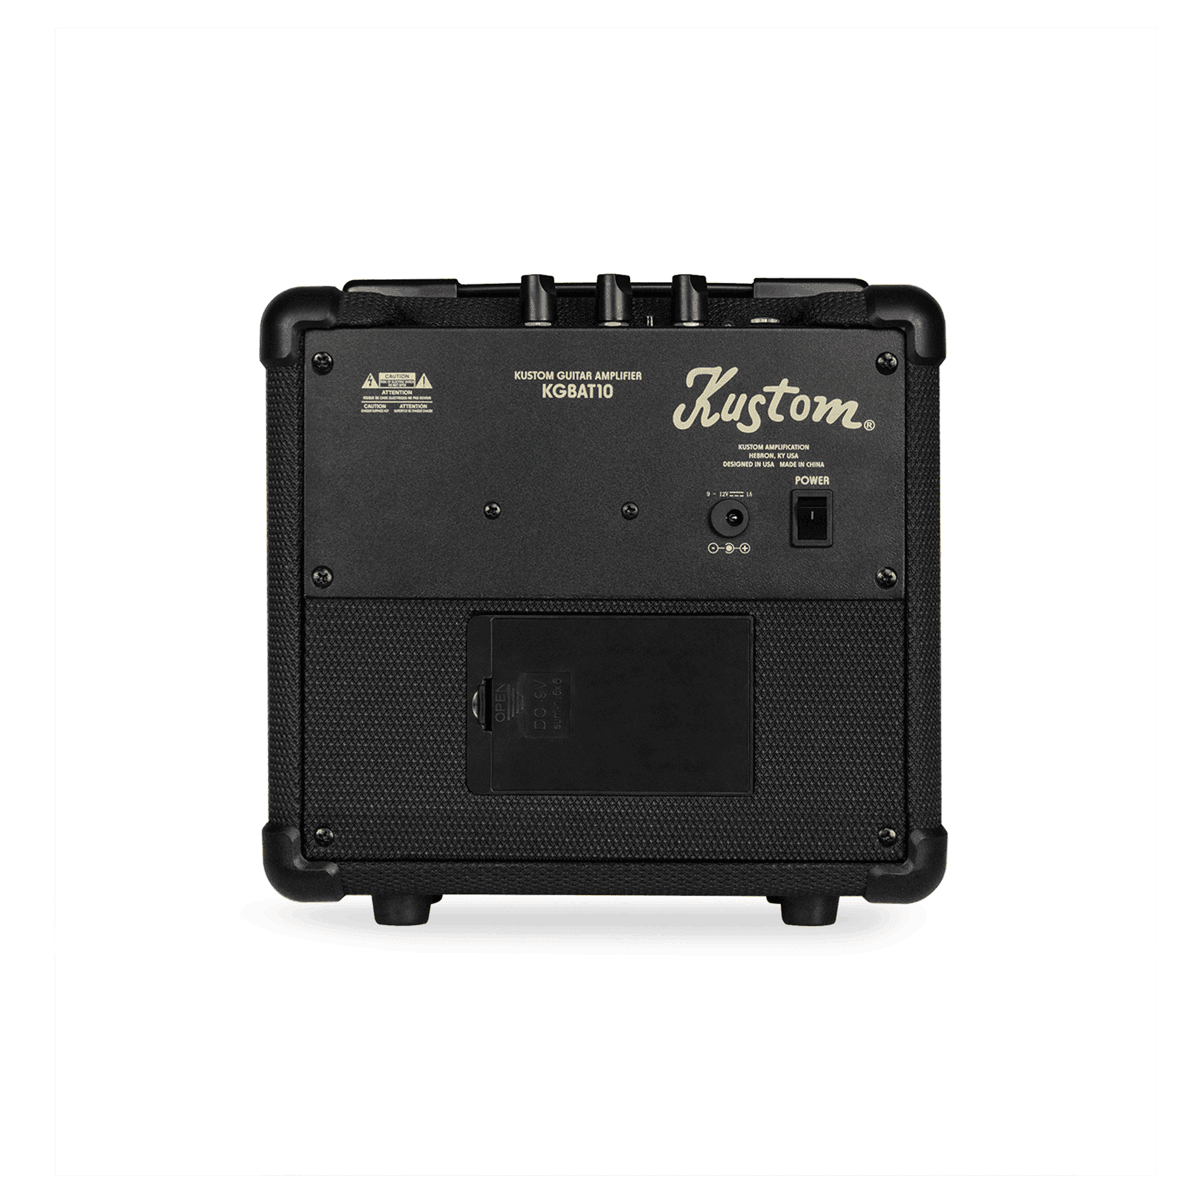 Kustom 10 Watt Practice Combo Battery Power - Guitars - Amplifiers by Kustom at Muso's Stuff